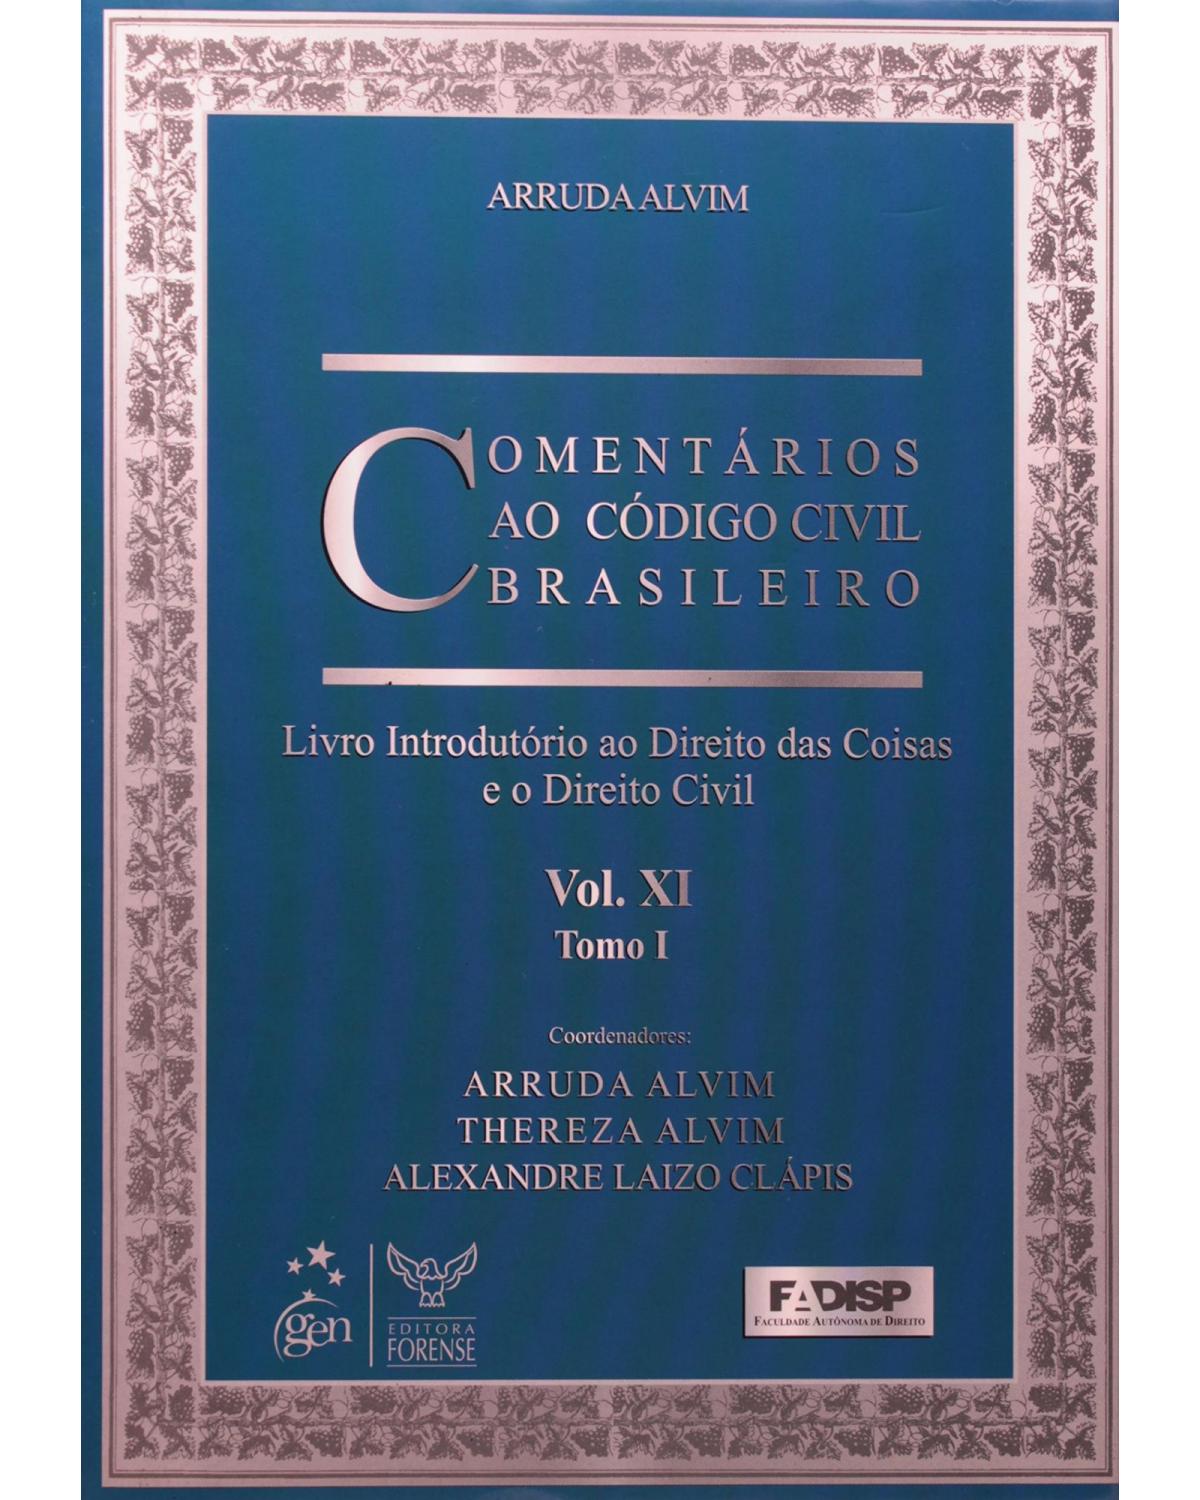 Comentários ao código civil brasileiro - Volume 11: Tomo I - Livro introdutório ao direito das coisas e o direito civil - 1ª Edição | 2009